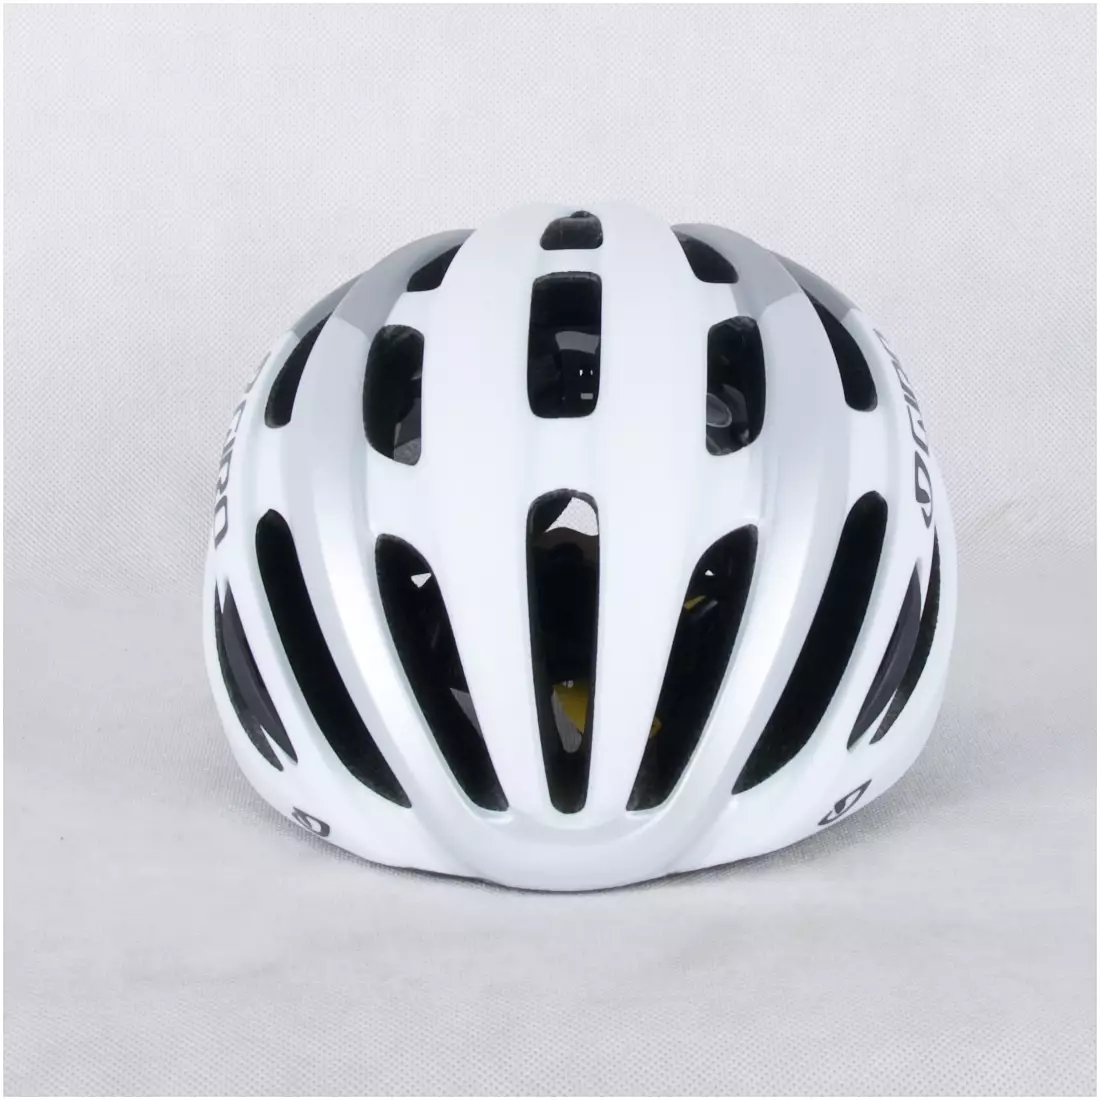 GIRO FORAY MIPS - white and silver matt bicycle helmet